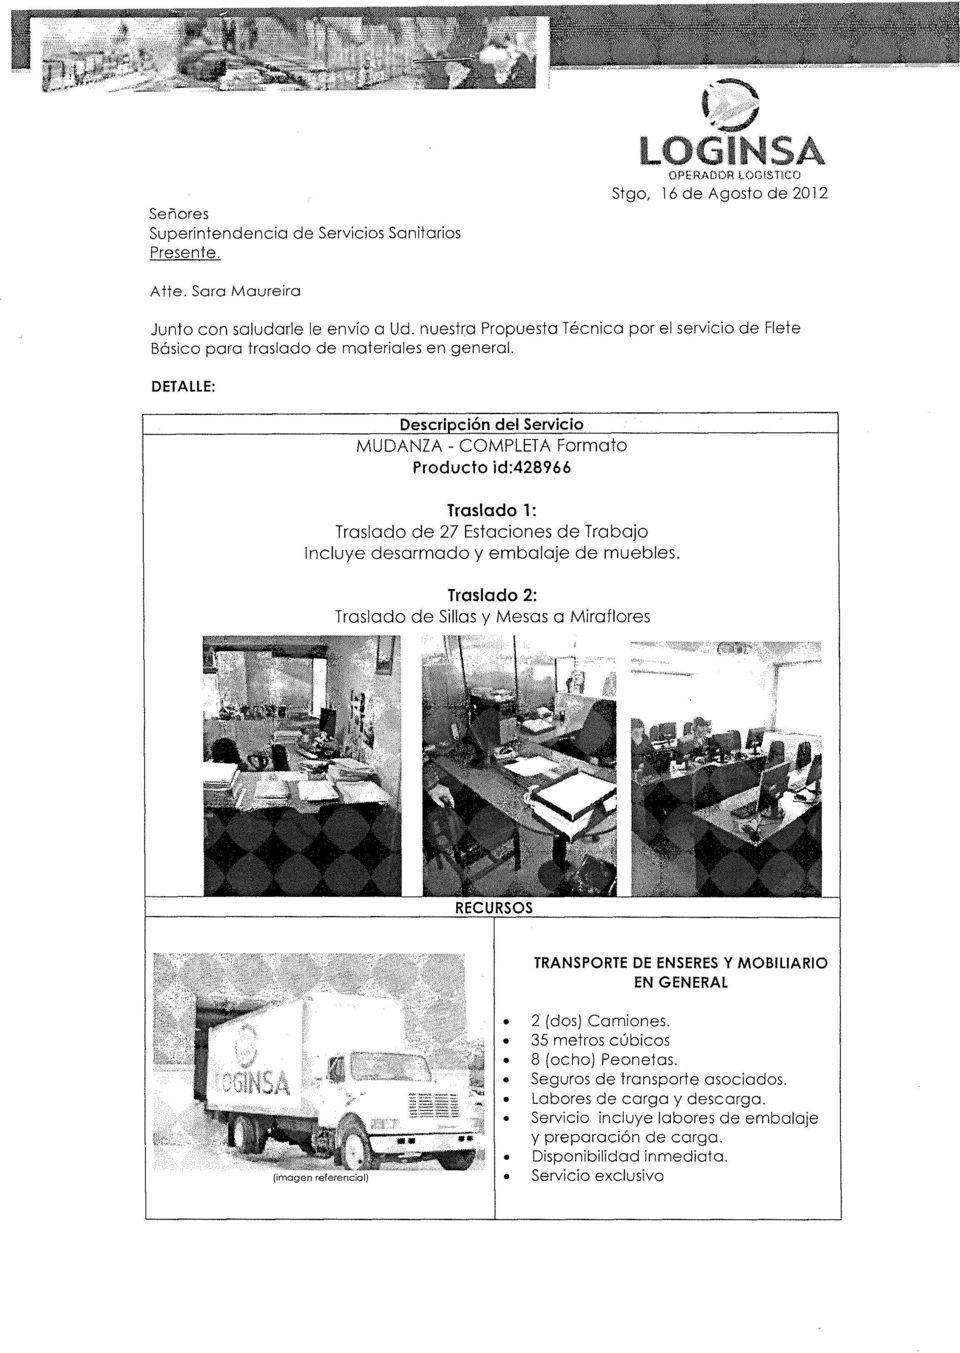 DETALLE: Descripción del Servicio MUDANZA - COMPLETA Formato Producto id:428966 Traslado 1: Traslado de 27 Estaciones de Trabajo ncluye desarmado y embalaje de muebles.